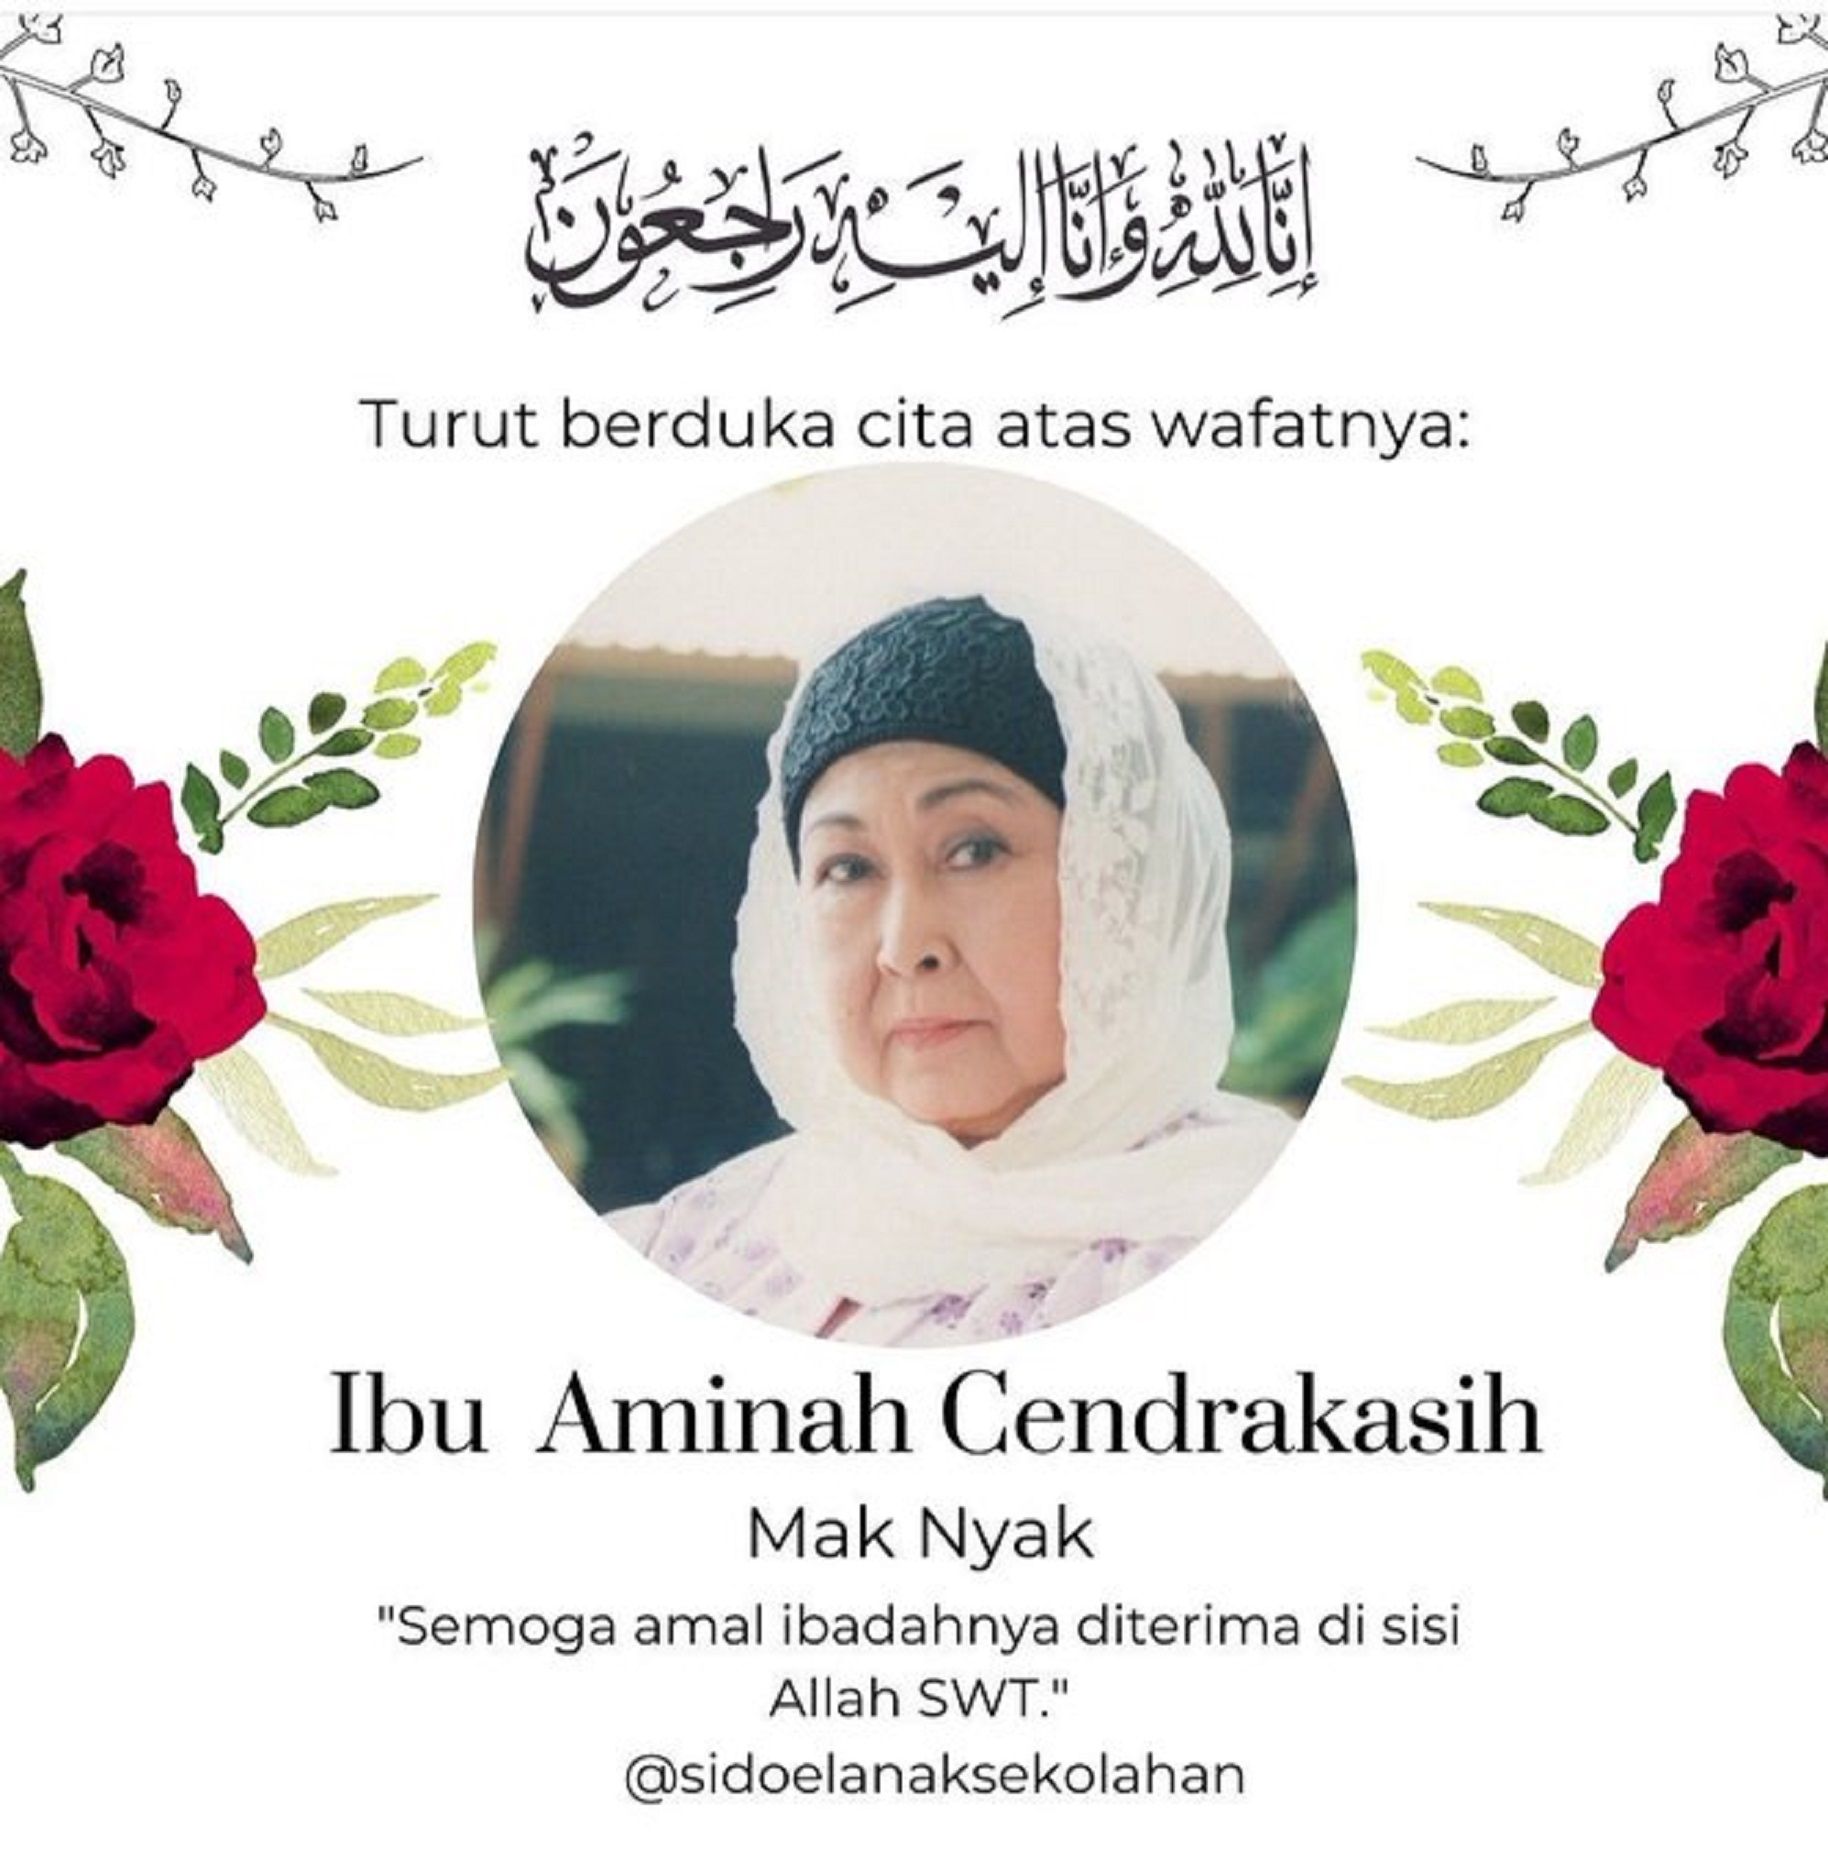 Air mata duka meninggalnya aktris senior Aminah Cendrakasih masih membuat Rano Karno dan Suti Karno menangis kehilangan almarhumah Mak Nyak.